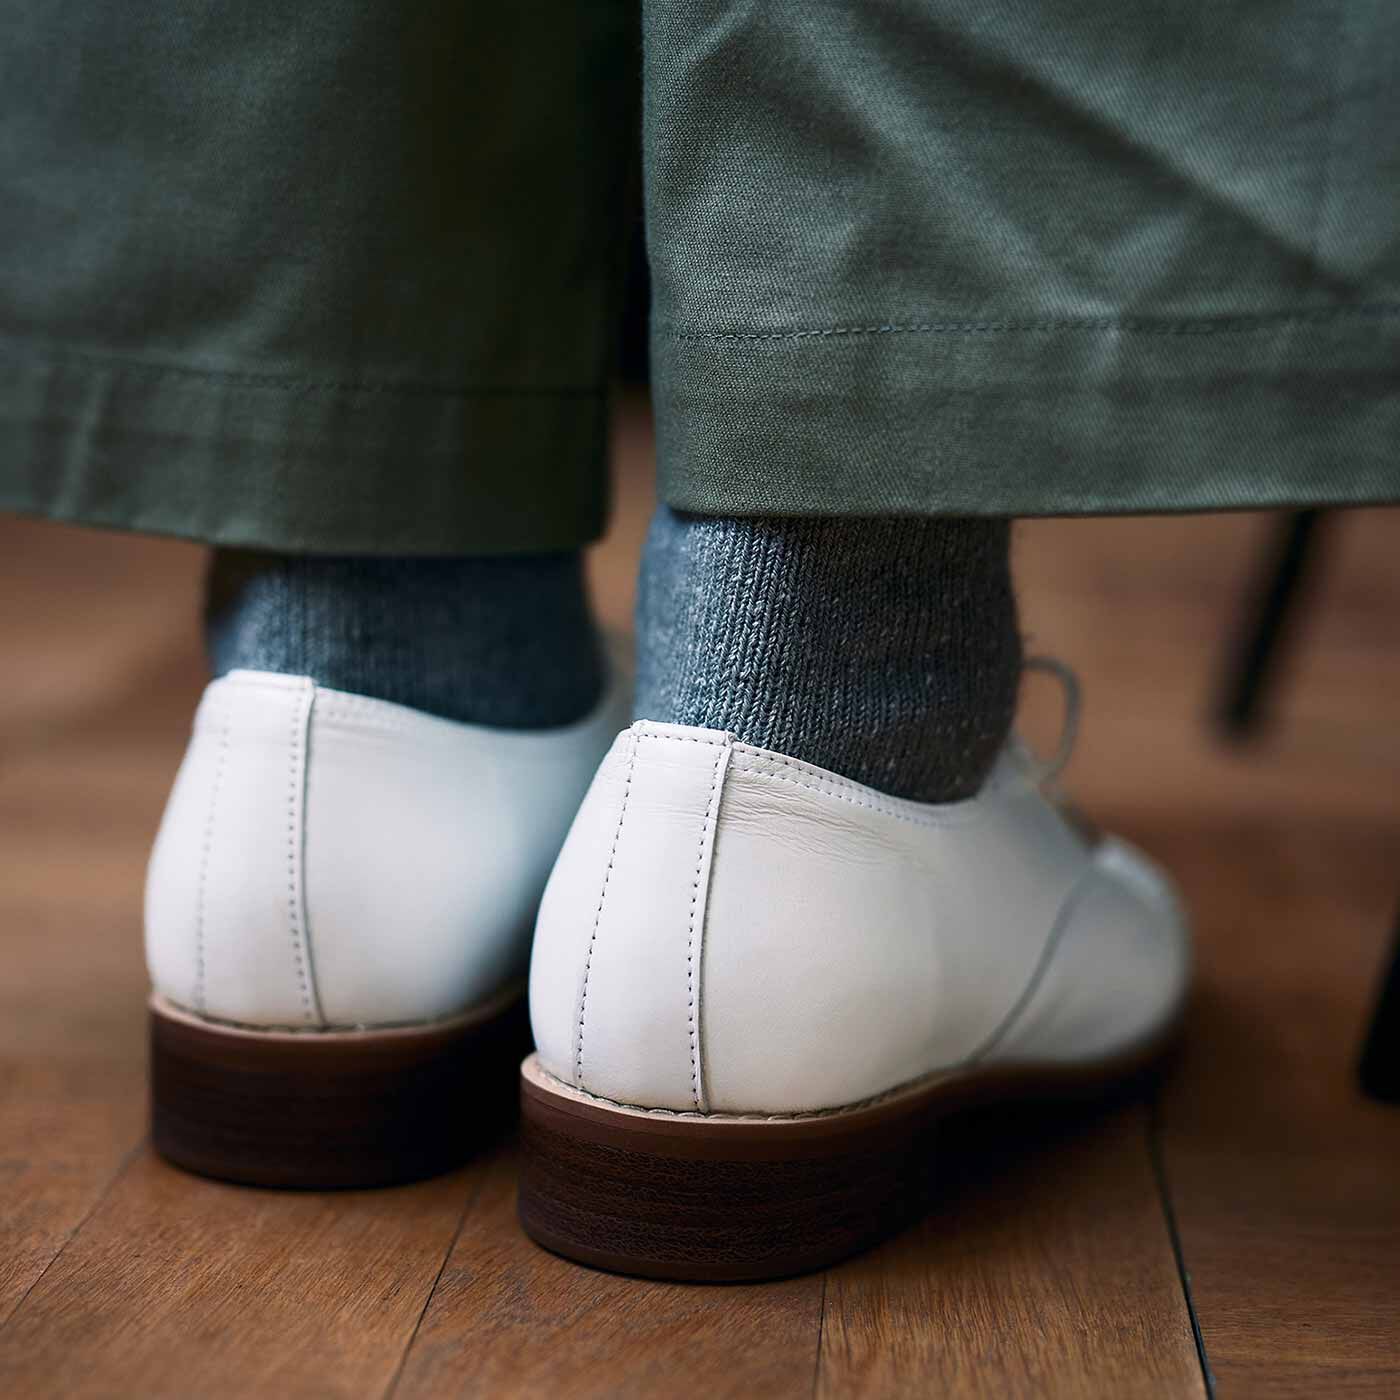 ＆Stories|長田靴職人が叶えた 本革ハーフウィングチップ〈ネージュ〉[本革 靴：日本製]|かっちりとしたピース付きソールはクッション性に優れ、ほどよいヒール高でパンツもスカートもバランスよく着こなせます。